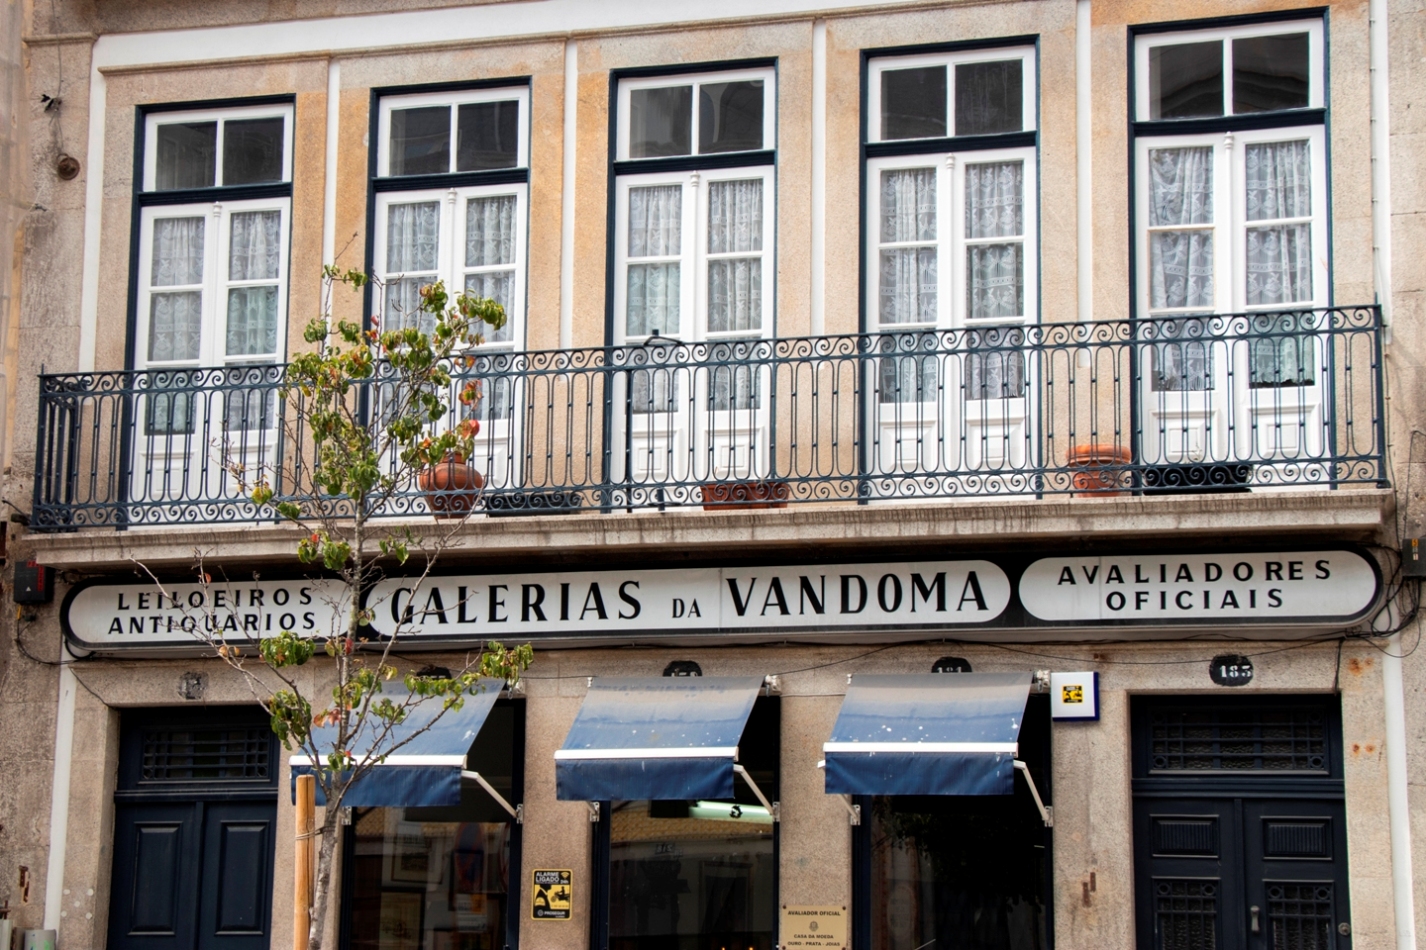 Galerias da Vandoma - Shops